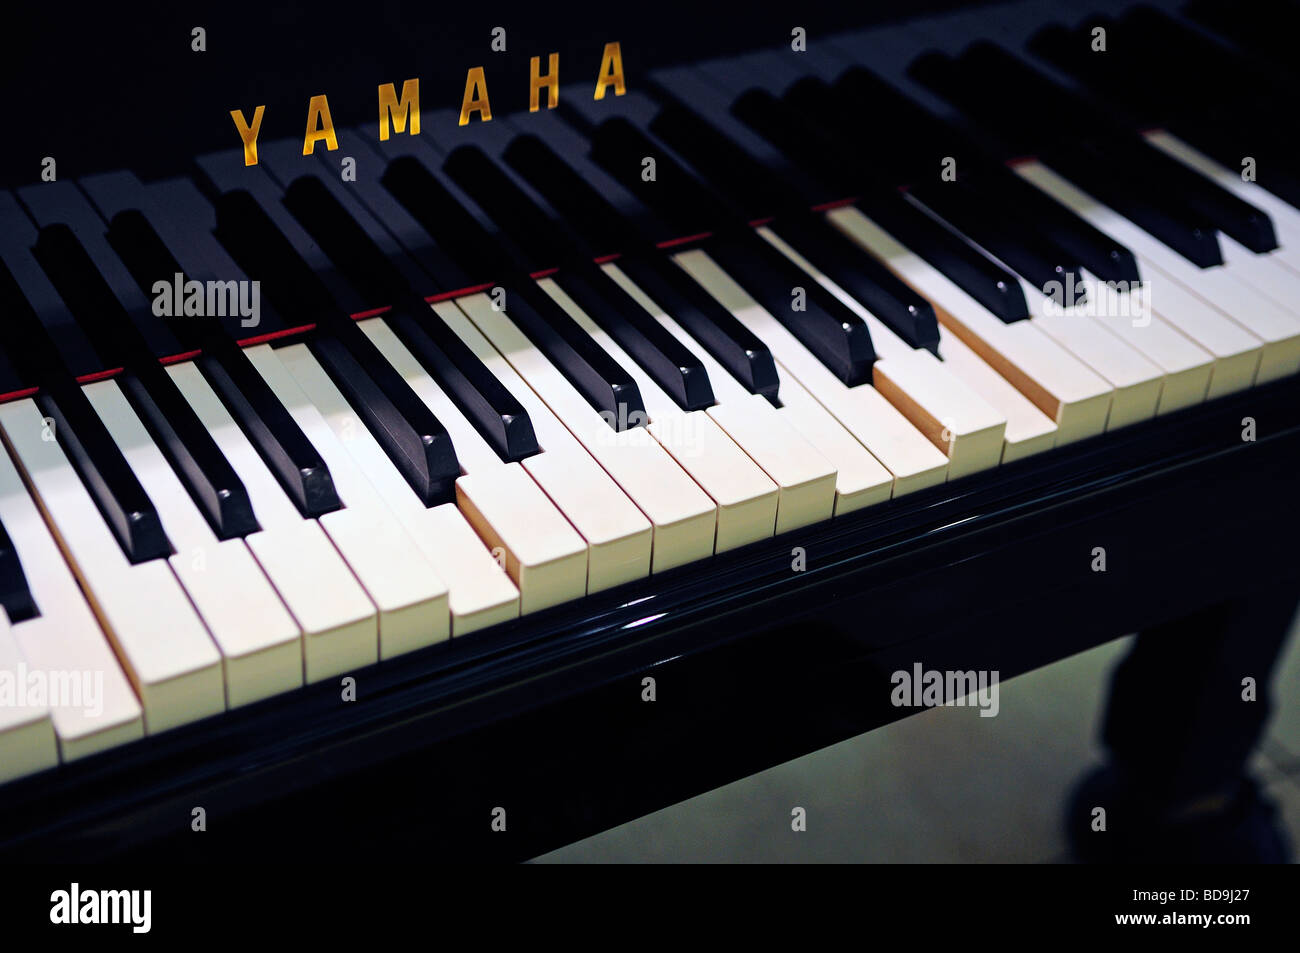 Yamaha premuto tastiera di pianoforte Foto Stock